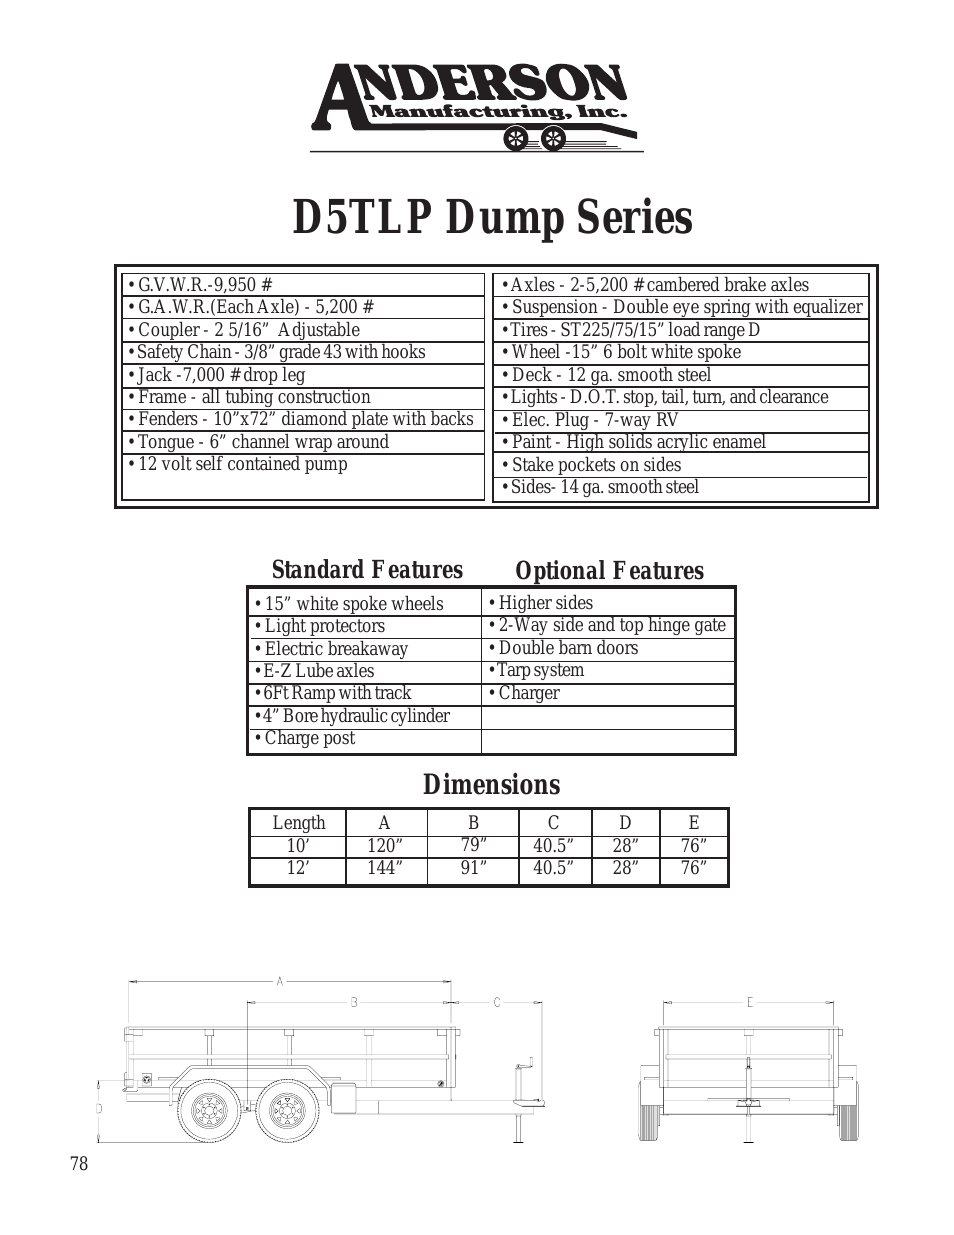 Dump Series D5TLP